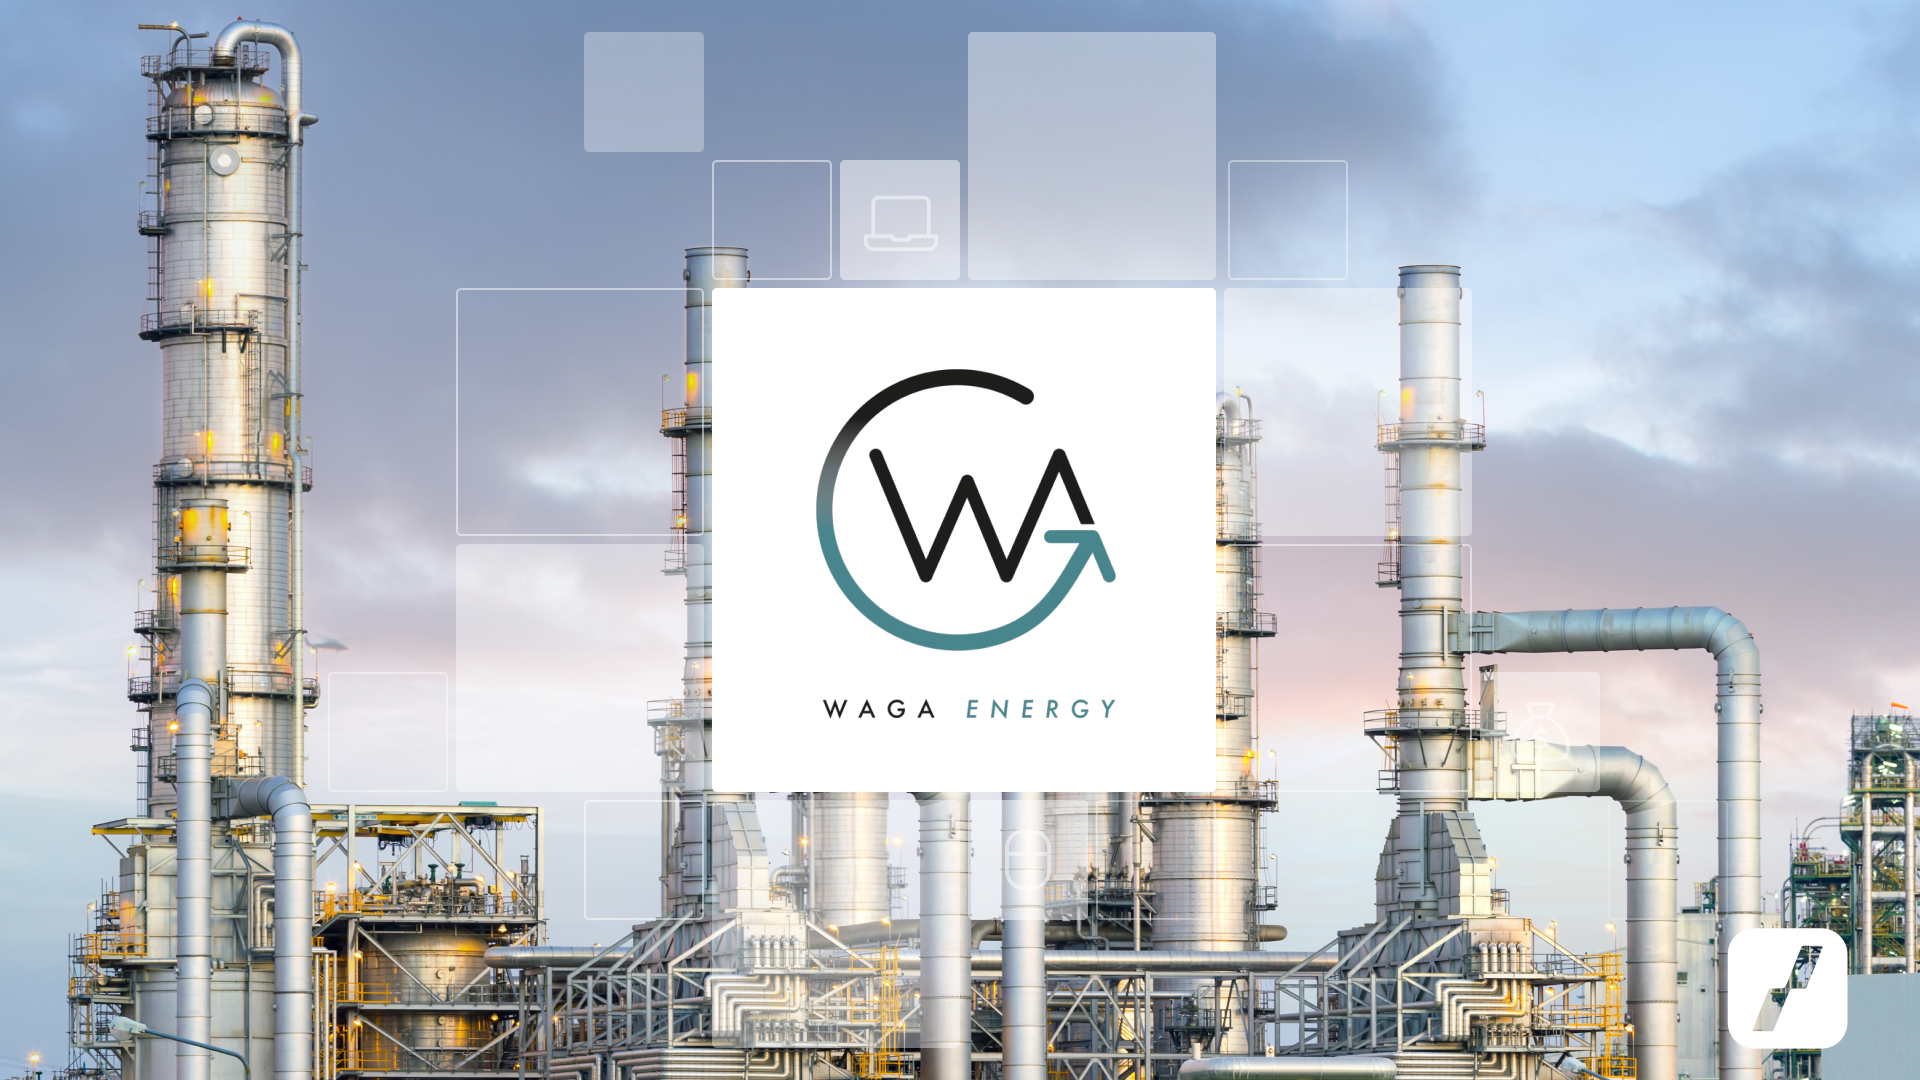 waga energy bourse - action waga energy - illustration usine logo waga energy